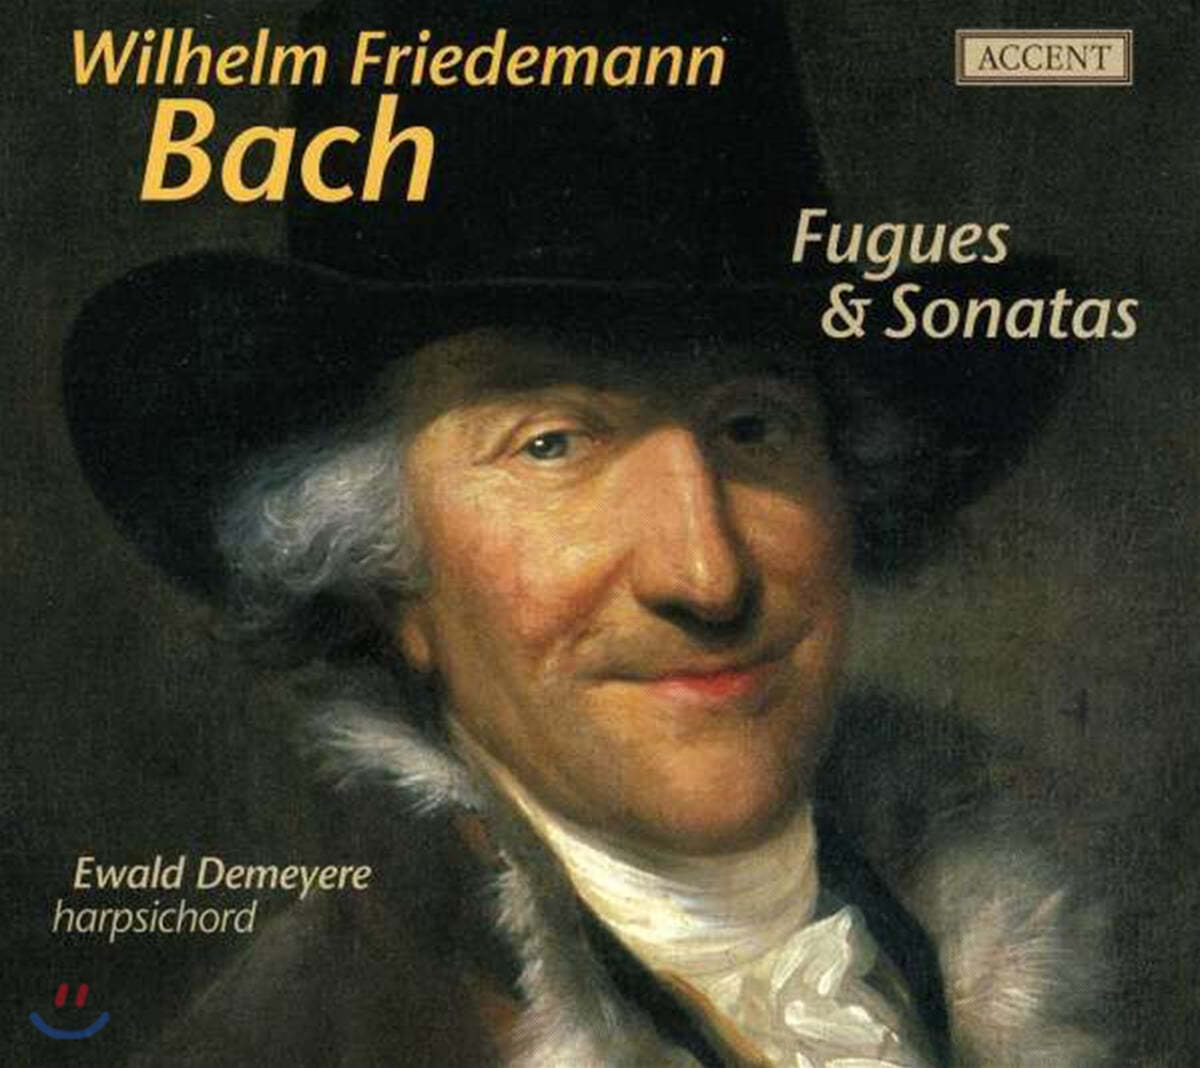 Ewald Demeyere 바흐: 푸가, 소나타 (W.F.Bach : Fugues, Sonatas)